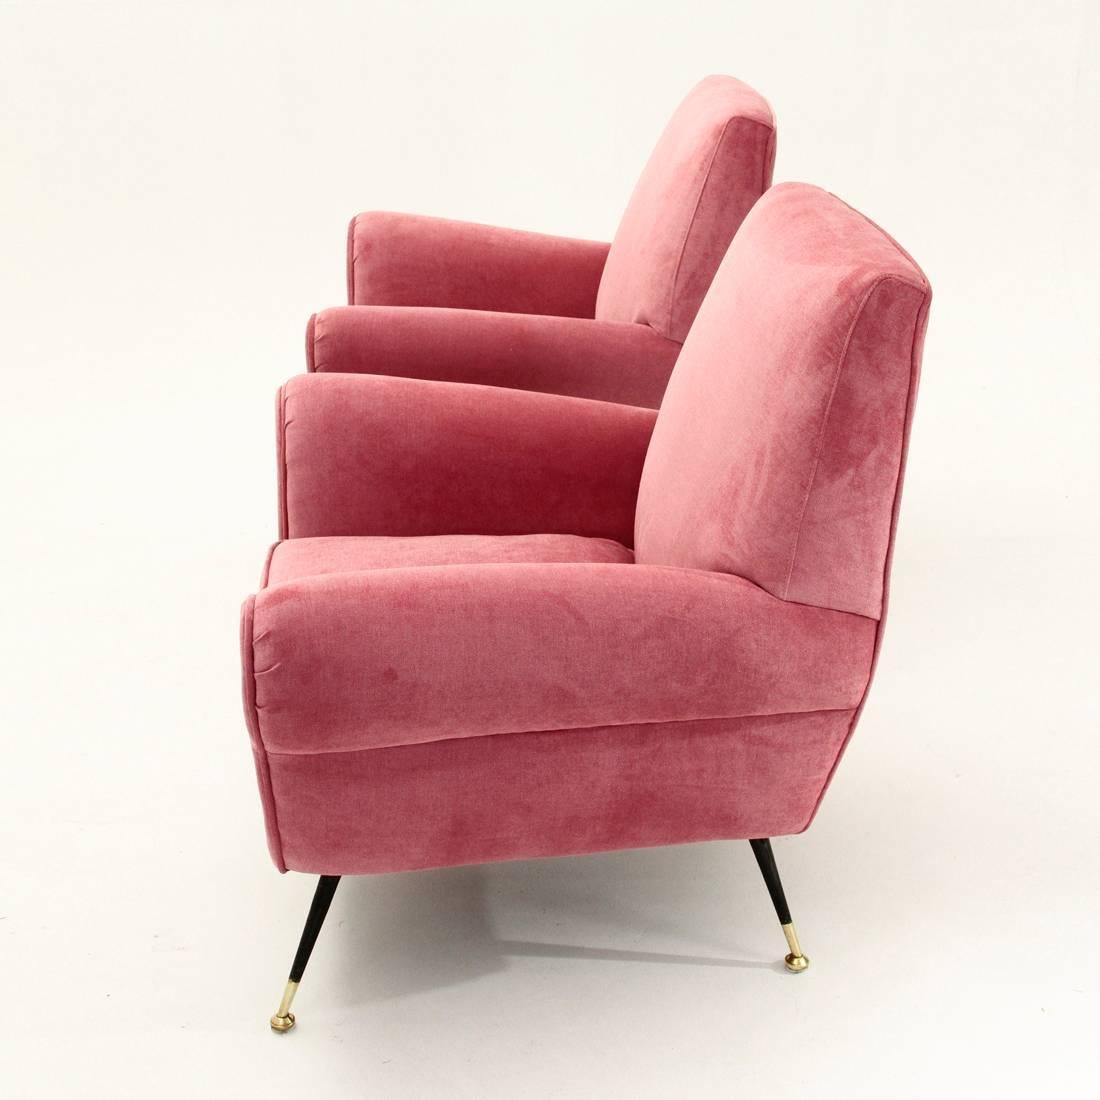 Mid-20th Century Italian Pink Velvet Armchair